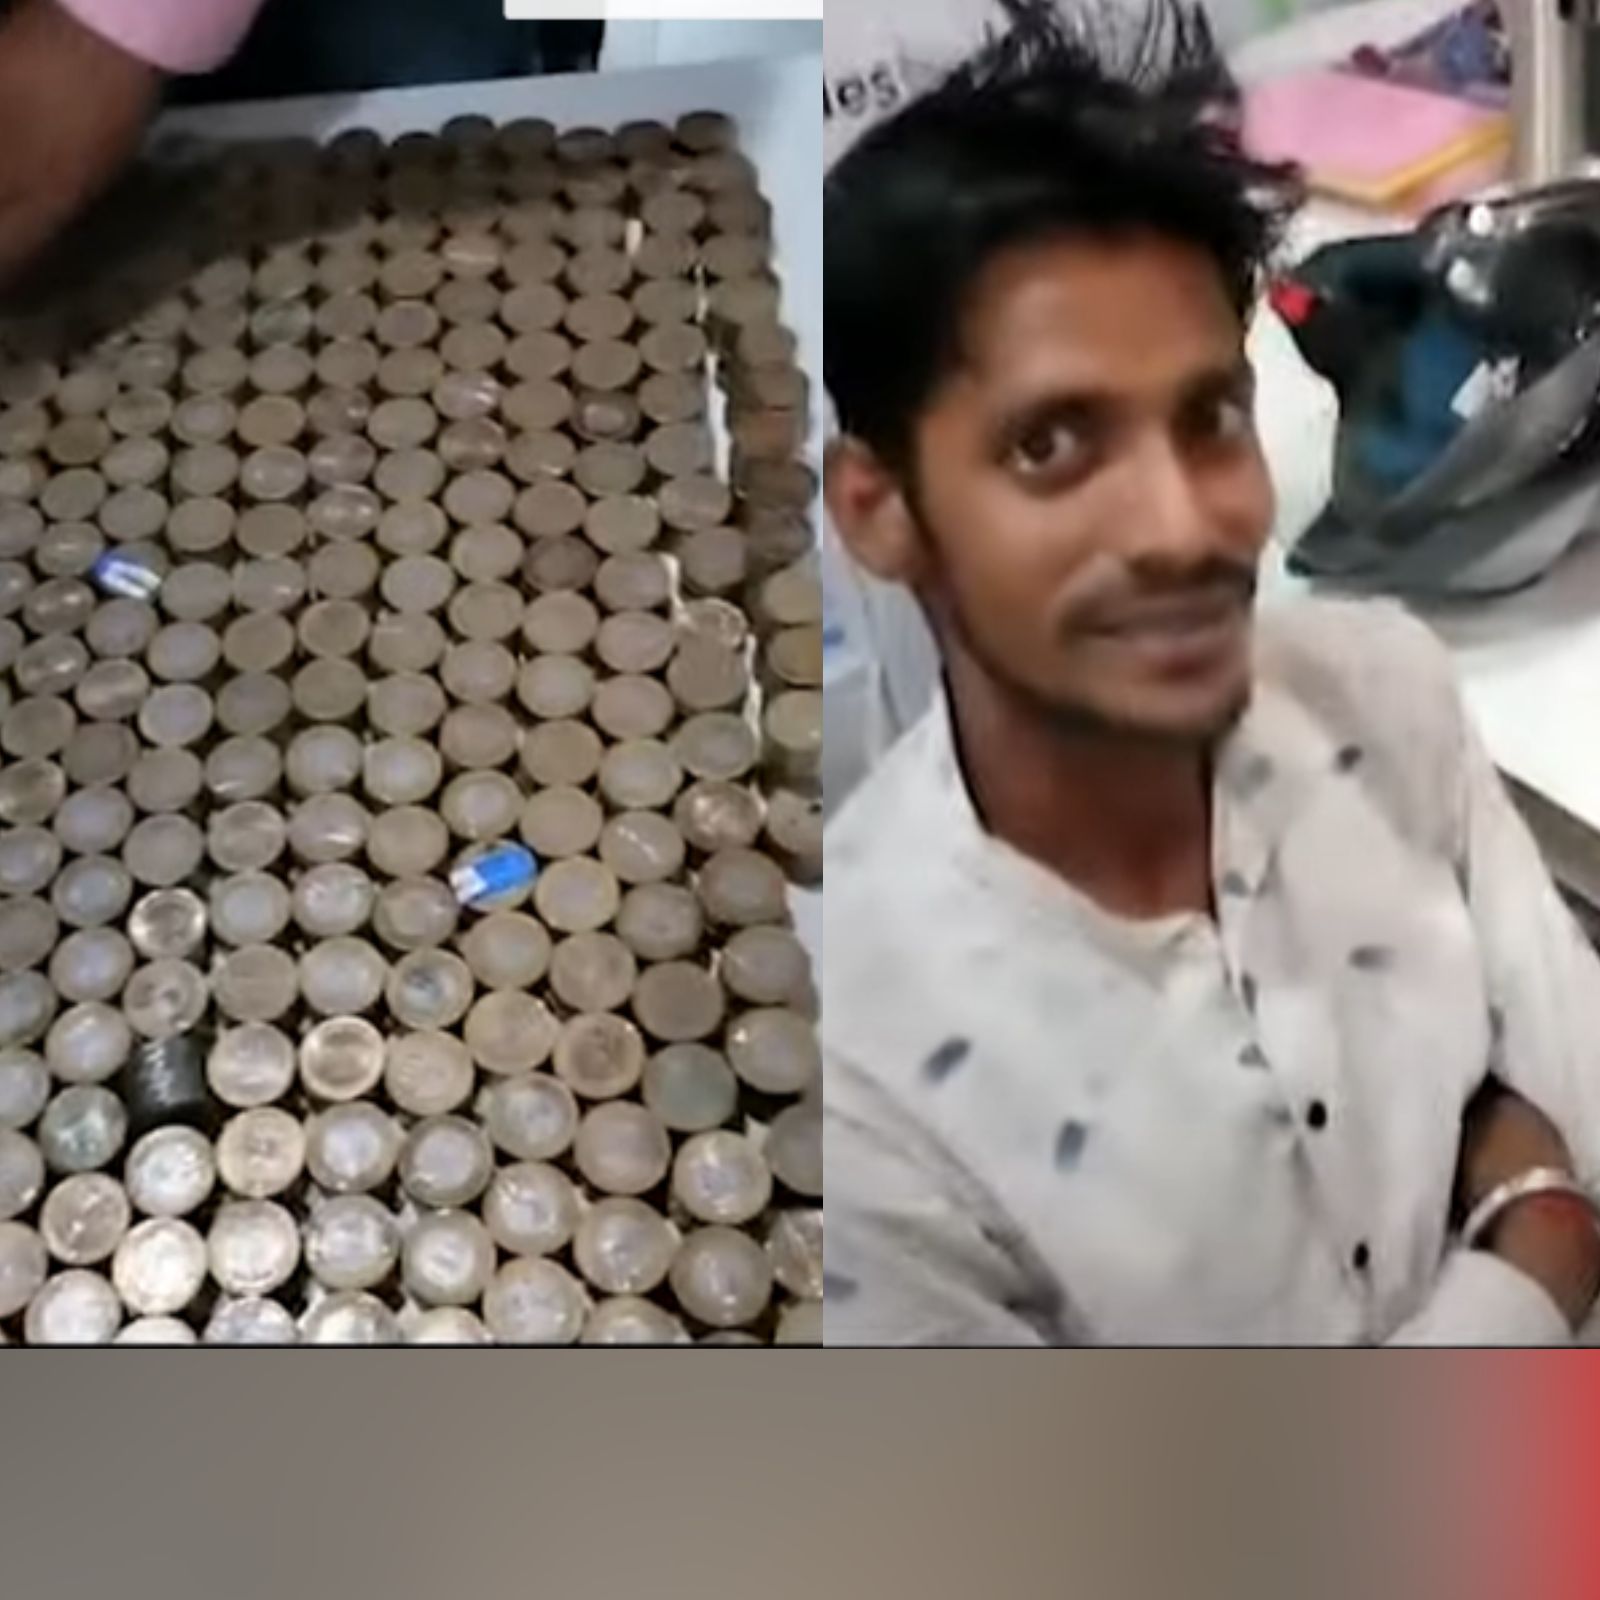 सौ.यूट्यूब: बाइक खरीदने के लिए 50,000 रुपये के सिक्के लेकर शोरूम पहुंचा युवक, कर्मचारियों के उड़ गए होश 